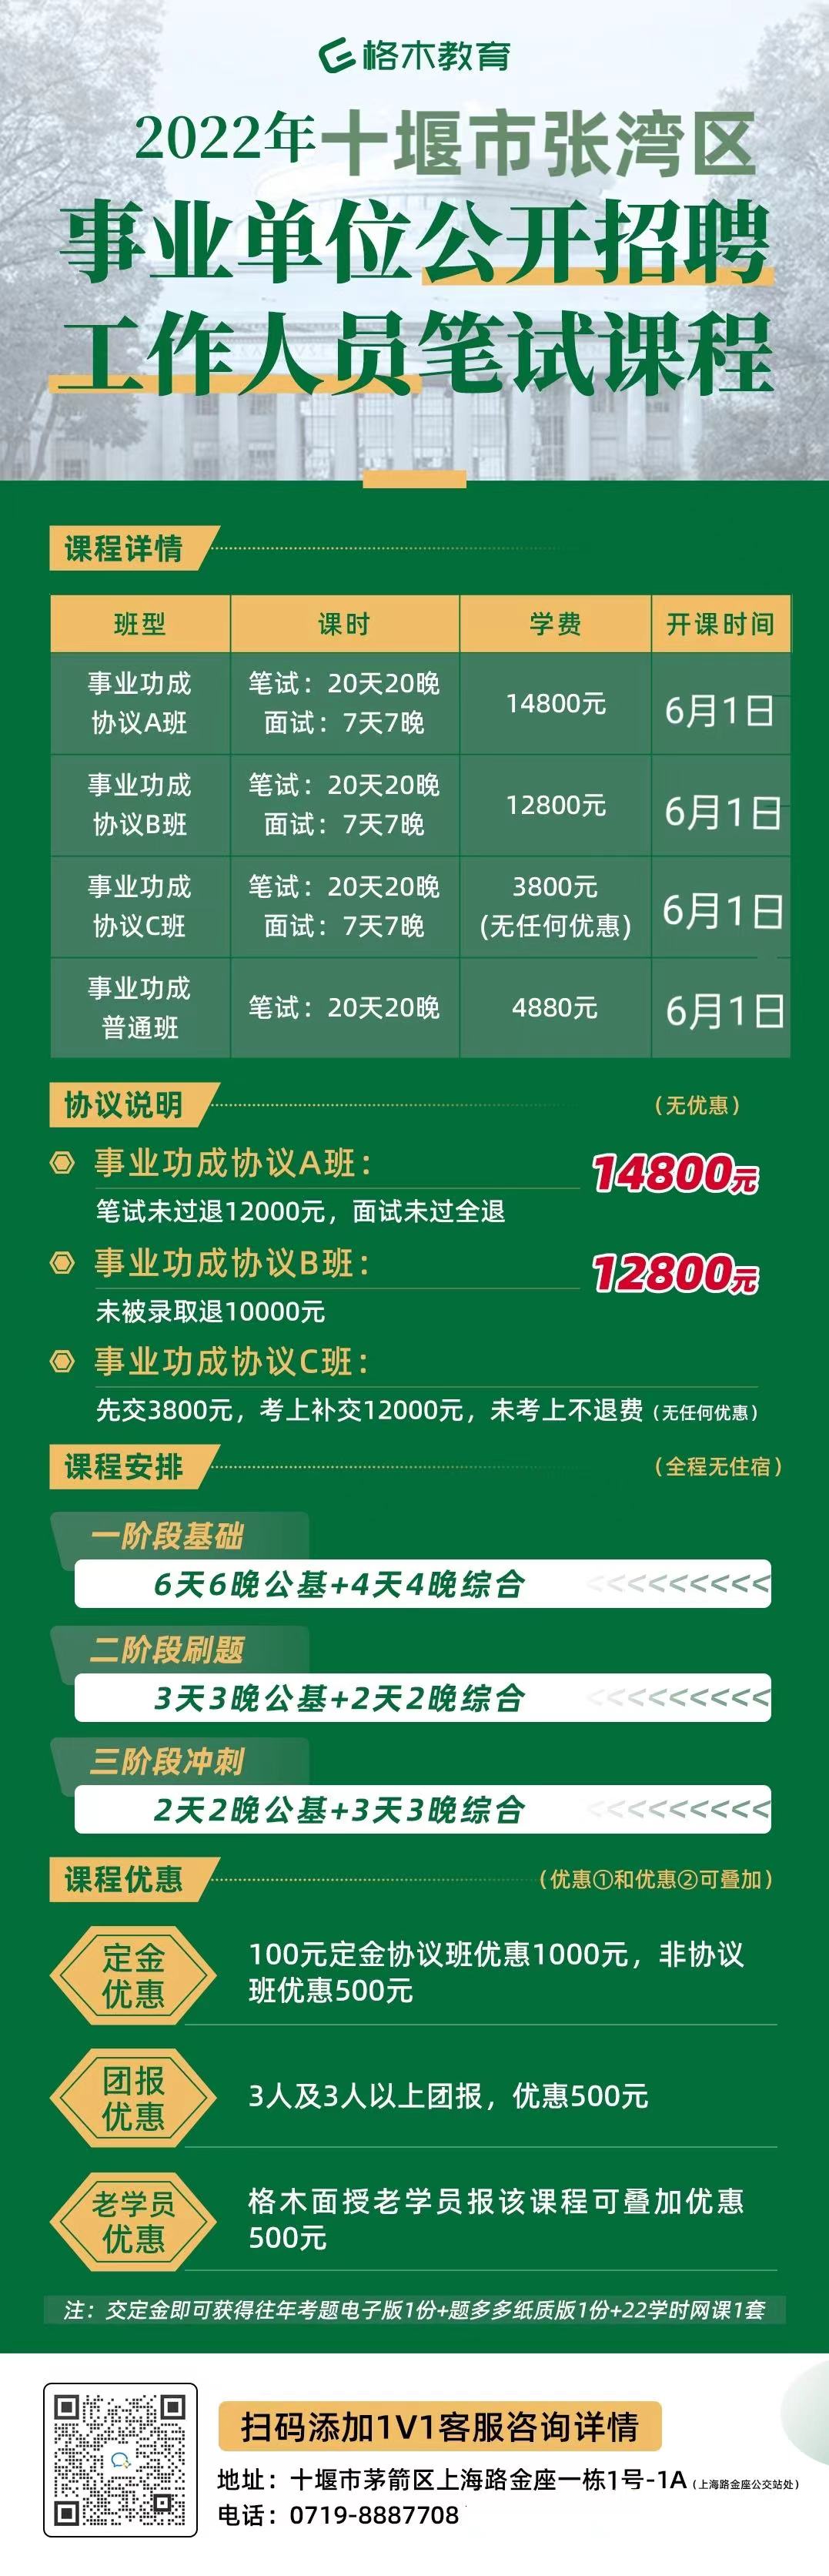 2022年十堰张湾区事业单位招聘报名情况统计表（截止5月26日上午9时）